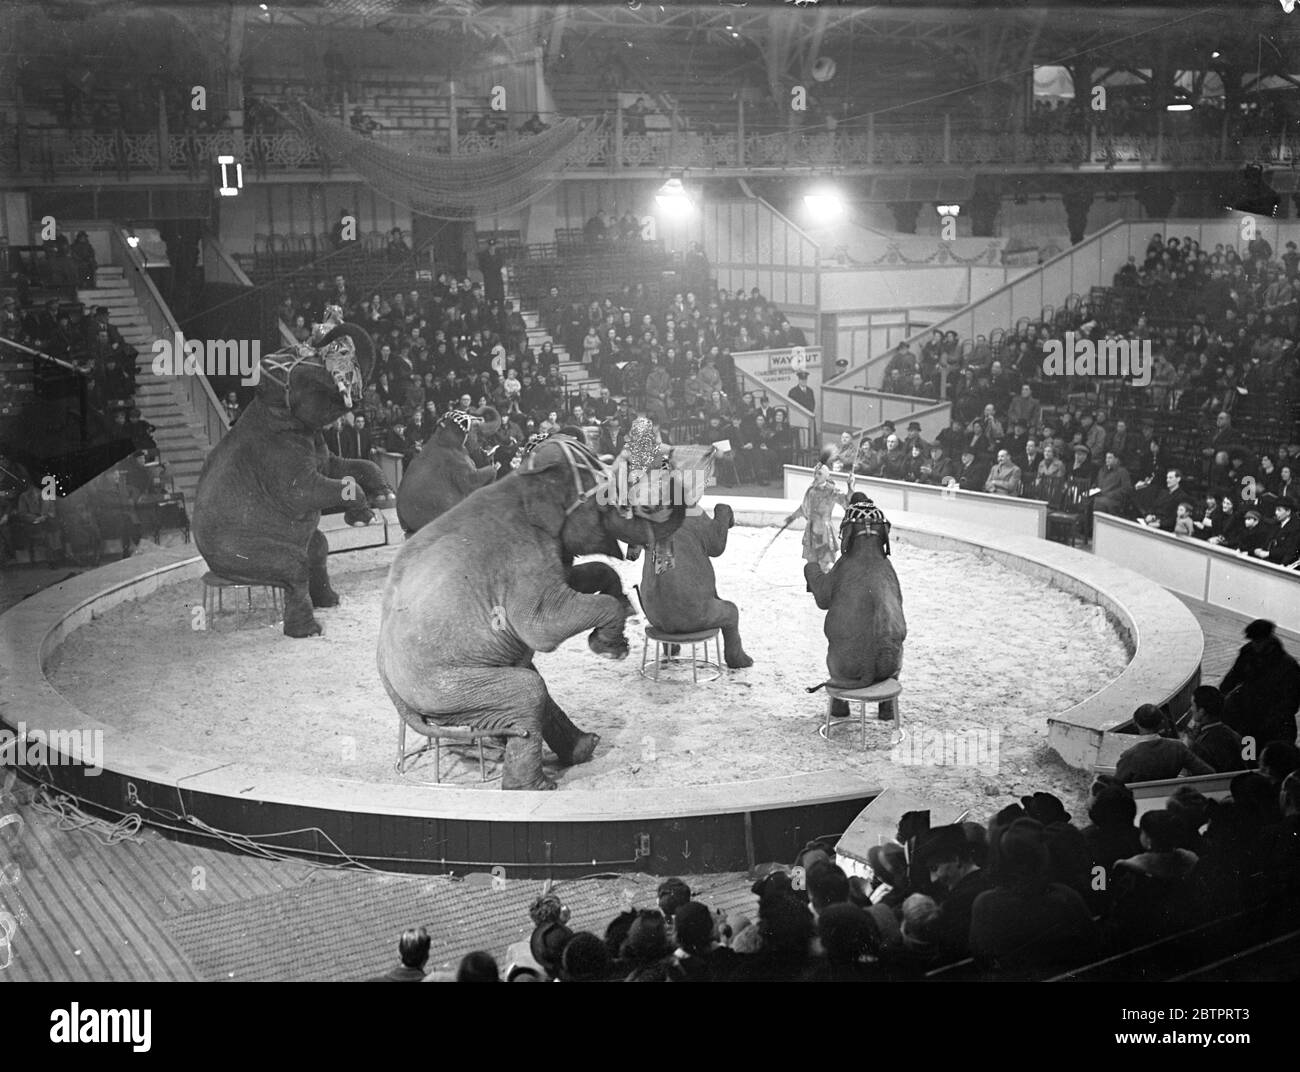 Le cirque revient en ville. Une vue générale de l'anneau de cirque bondé pendant que l'éléphant a donné leur acte dans la première exécution du Cirque de Noël au Royal Agricultural Hall, Islington, Londres. 20 décembre 1937 Banque D'Images